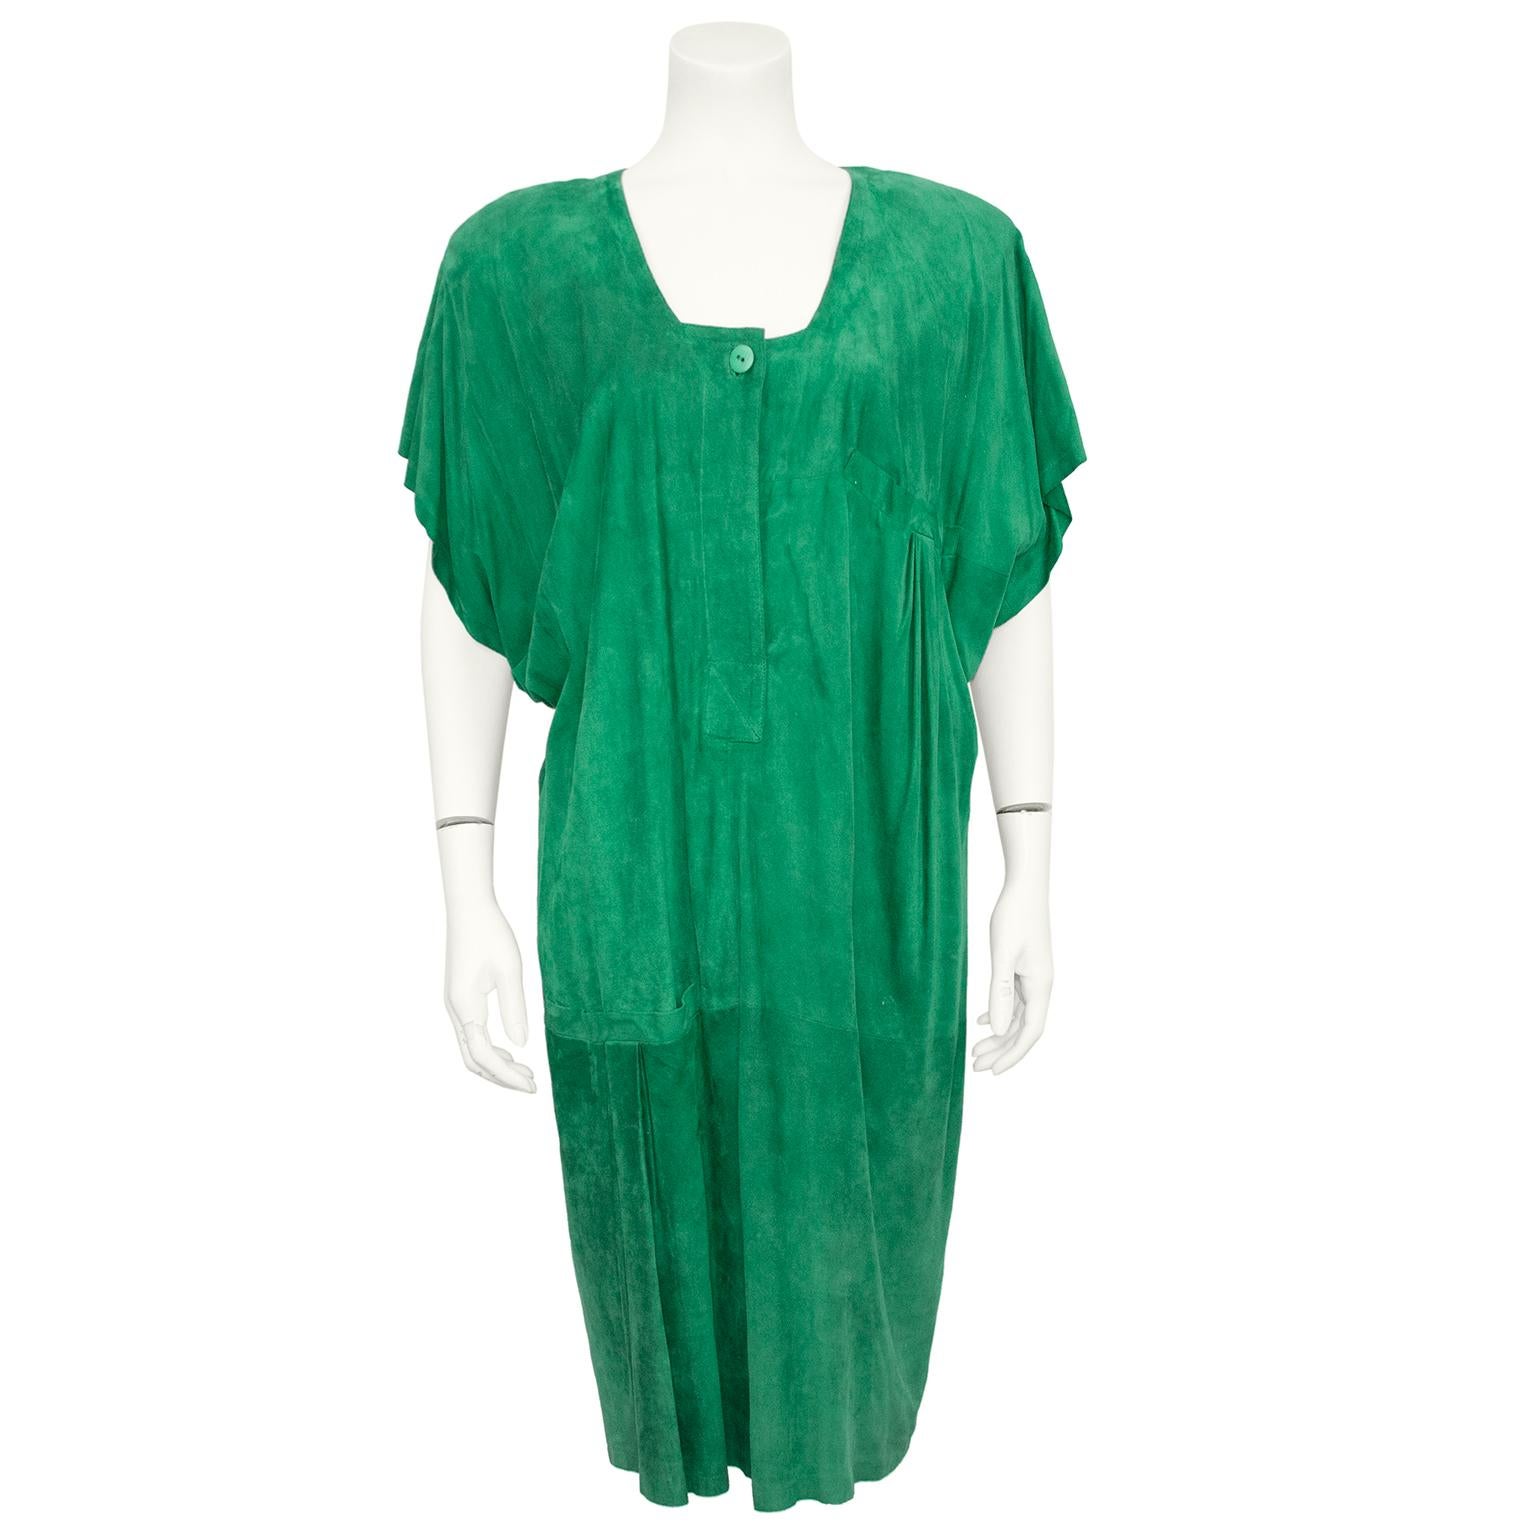 Ensemble robe et manteau surdimensionnés vert Kelly Mario Valentino des années 1980. L'ensemble est fabriqué en daim beurre le plus doux et le plus léger qui soit. Le manteau est doté de grands rembourrages à l'épaule qui créent une épaule très